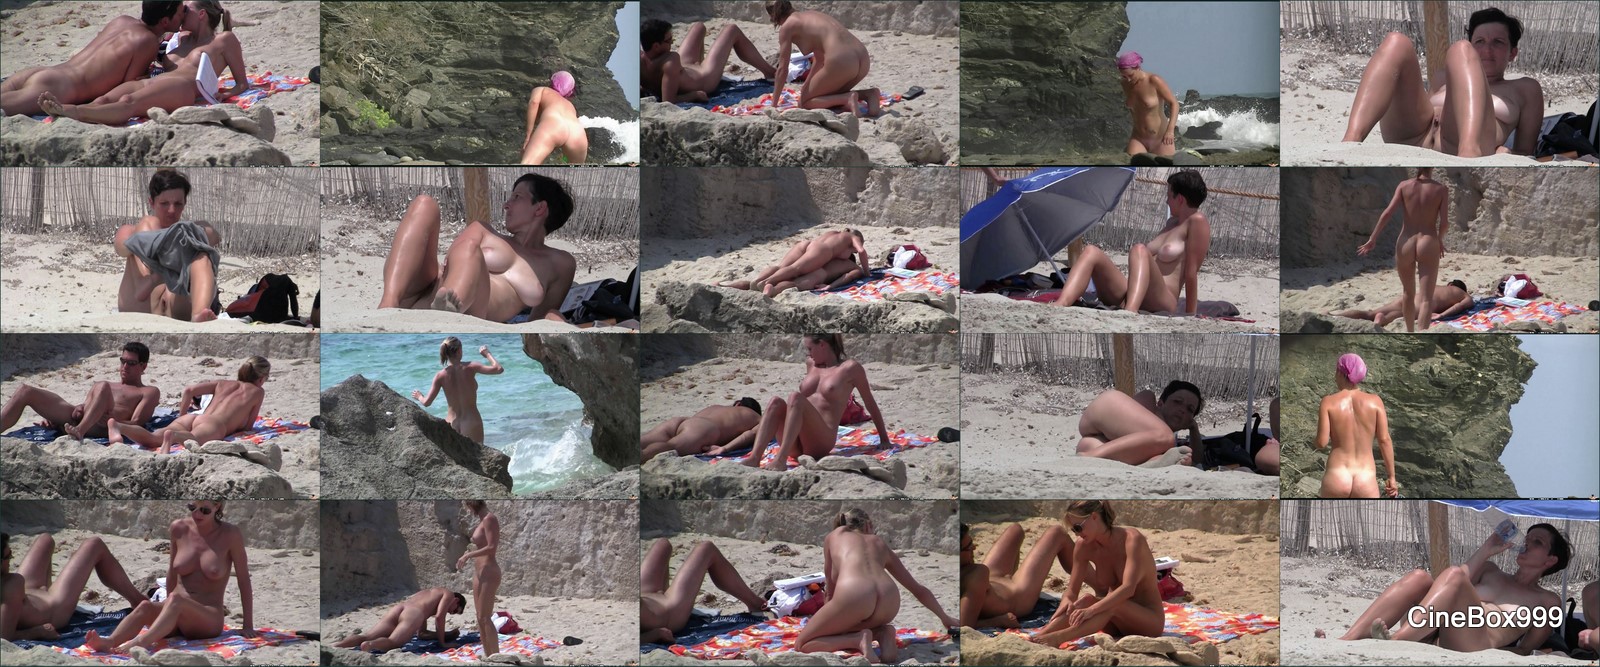 Голые пляжи Европы 2015 / Nude Euro Beaches 2015. 